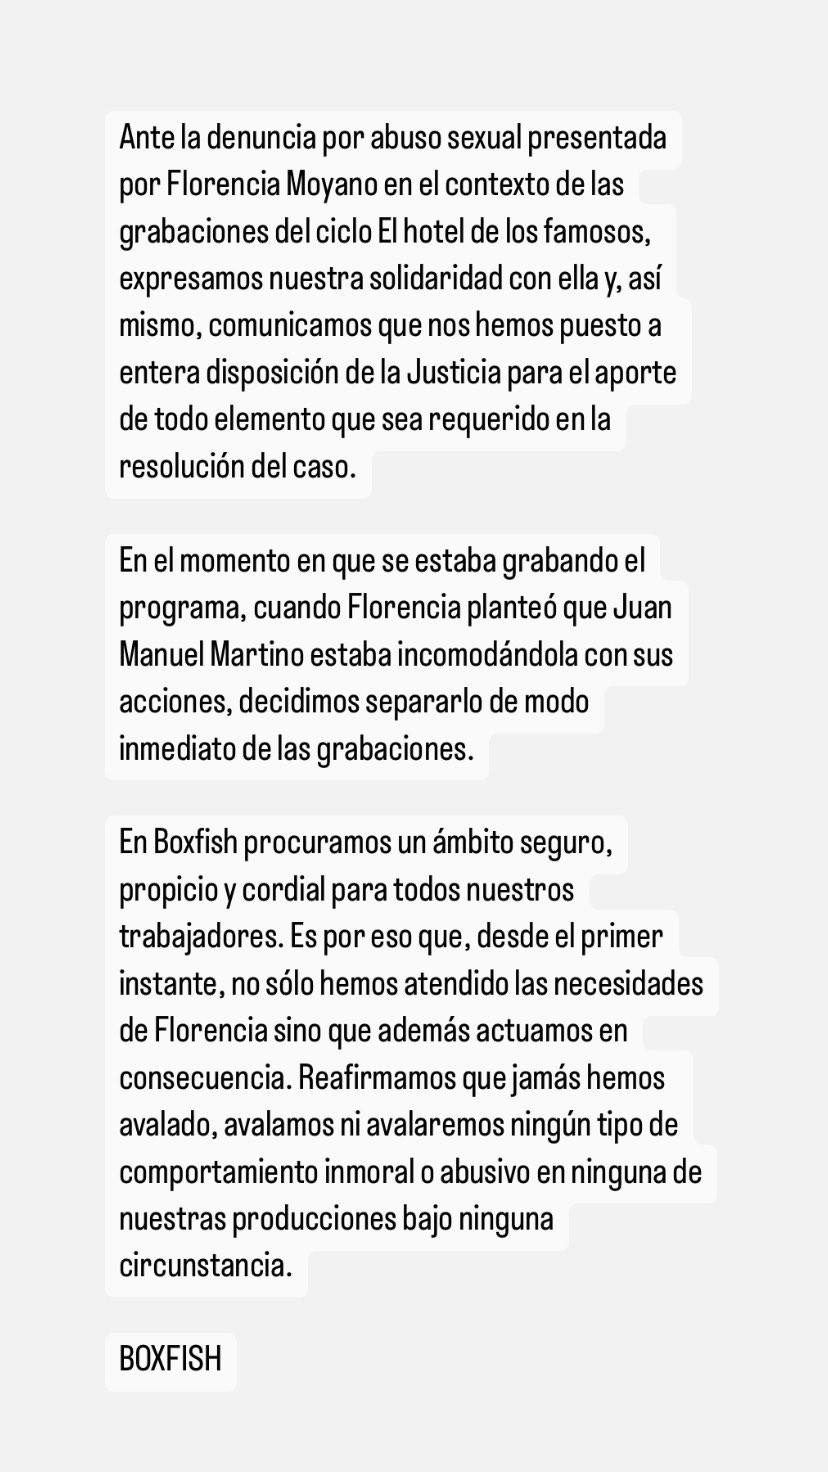 El comunicado oficial de la productora Boxfish, tras la denuncia de Flor Moyano a Juan Martino. Foto: Instagram @boxfishtv.